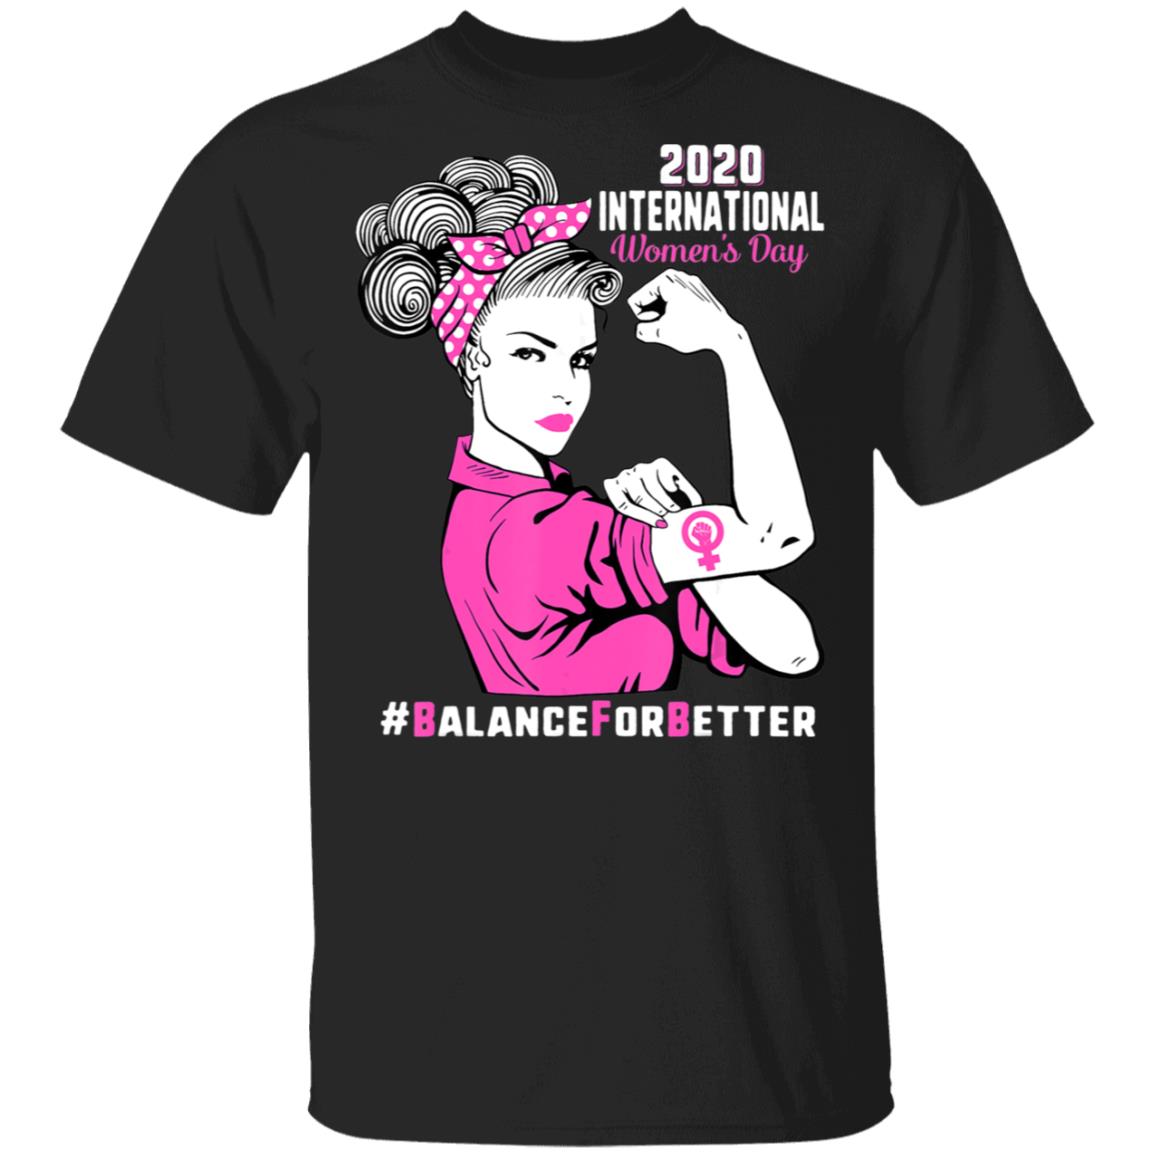 International Women's Day T Shirt 2020 Best Sale, 59% OFF 